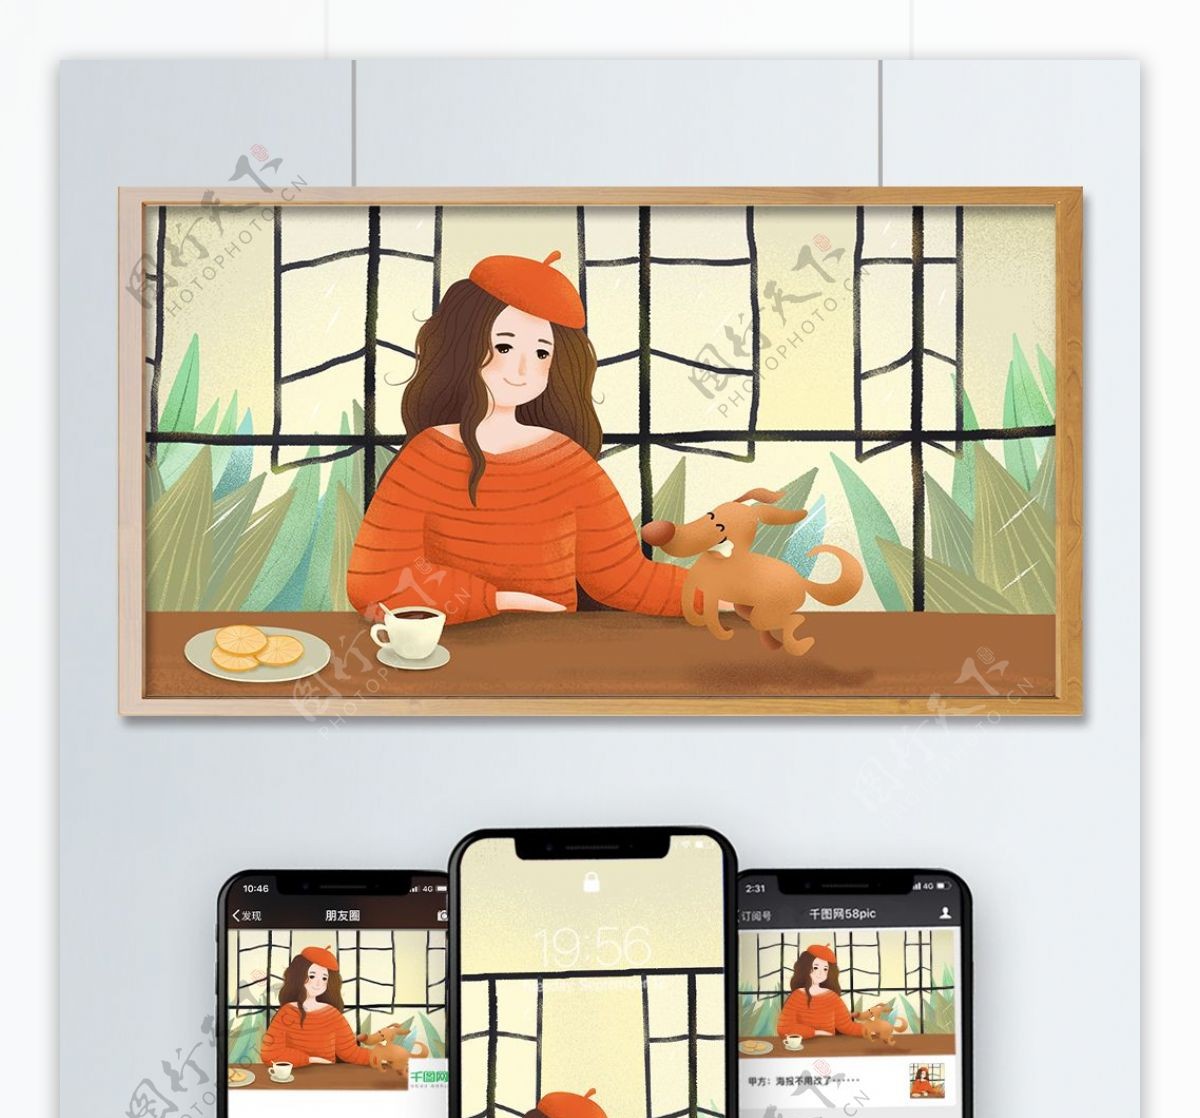 原创手绘插画二十四节气秋分窗前女孩与小狗